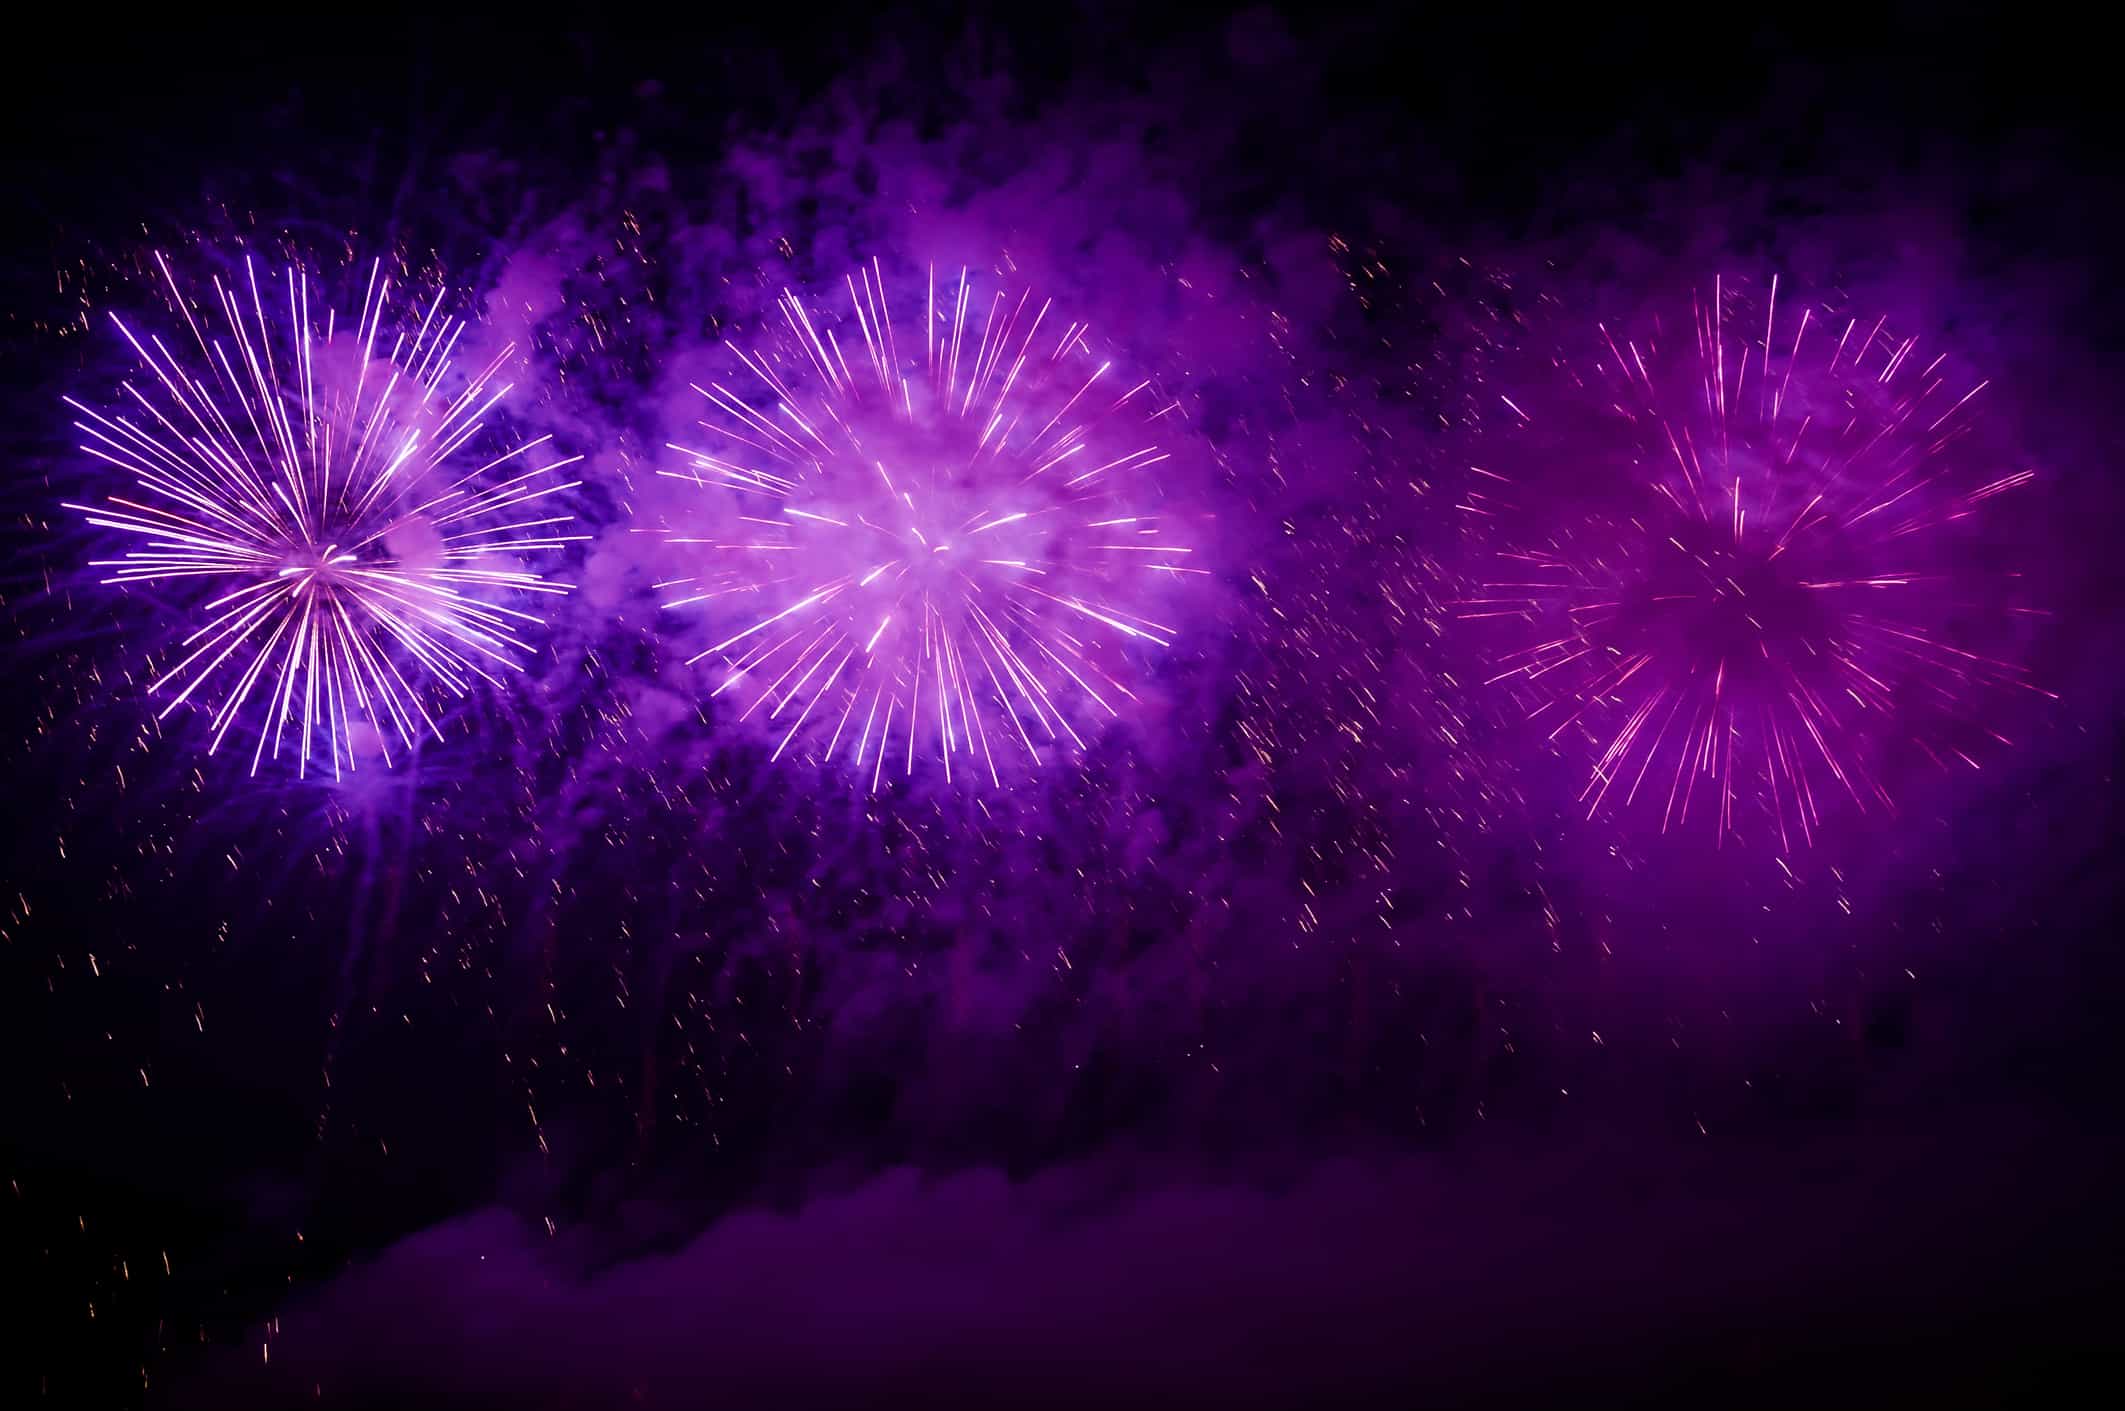 Purple fireworks on the night sky